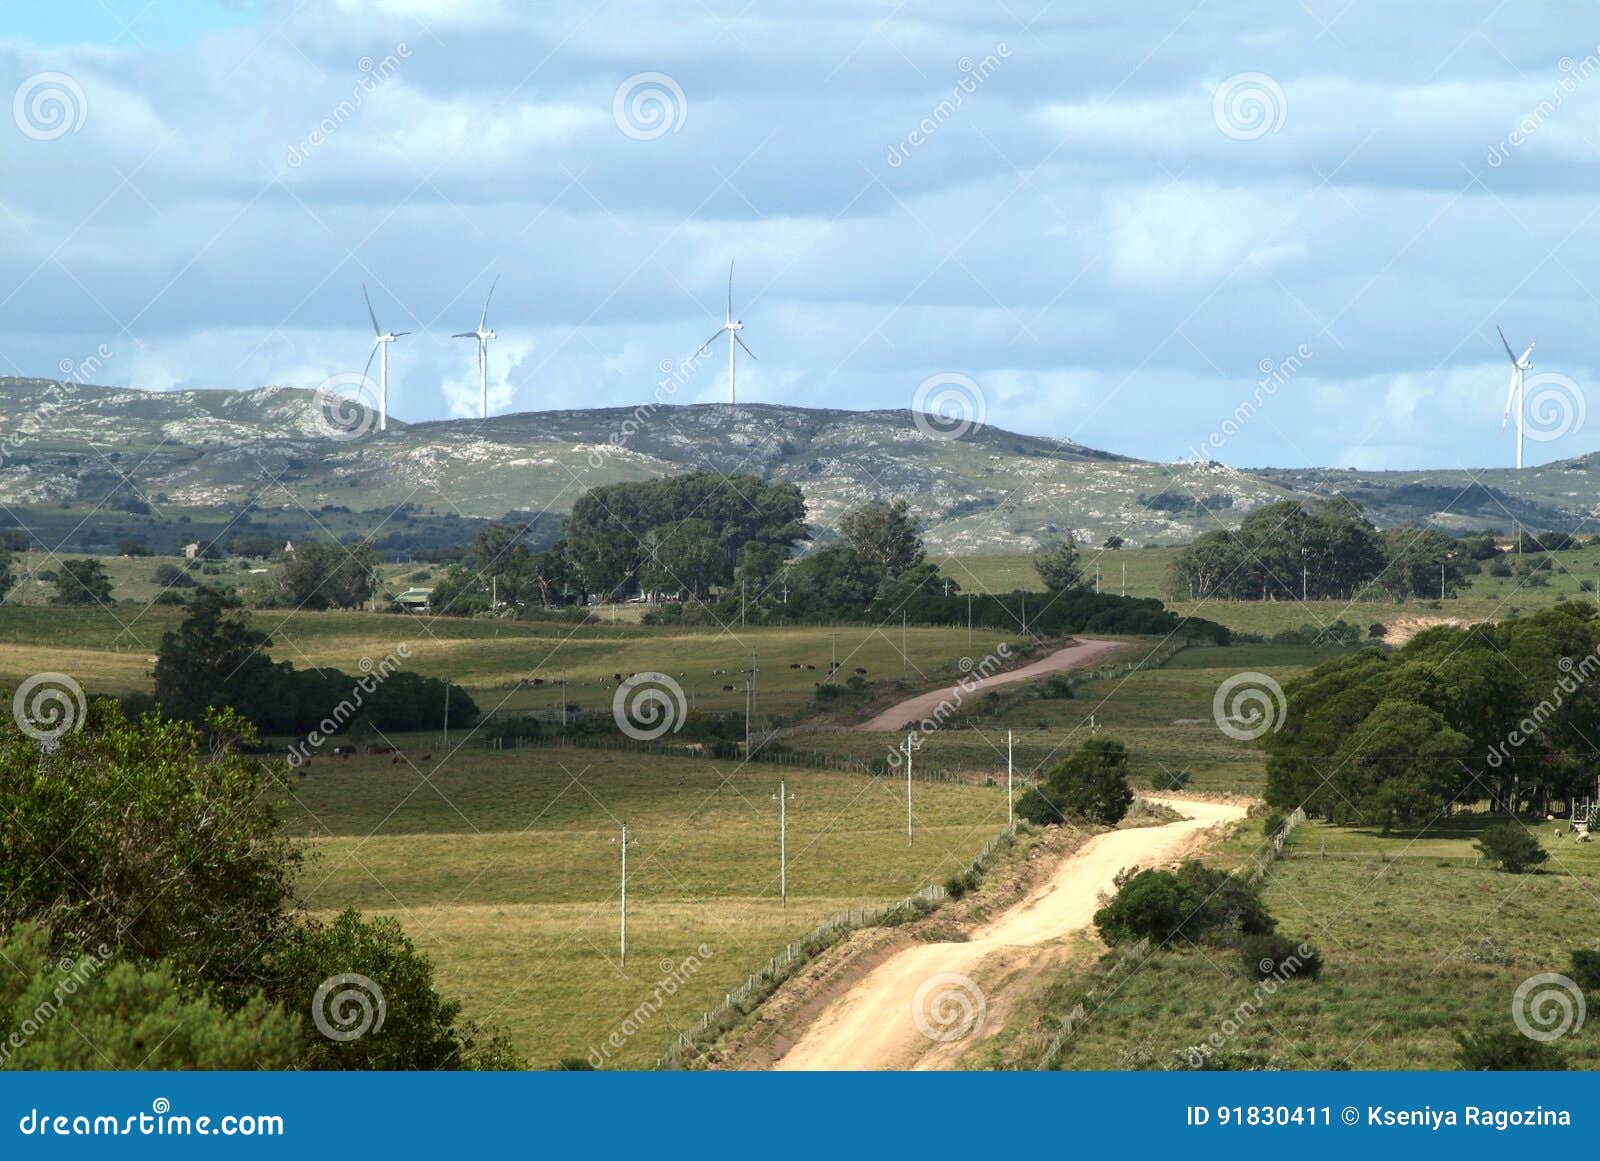 windmills on the sierra carape in uruguay